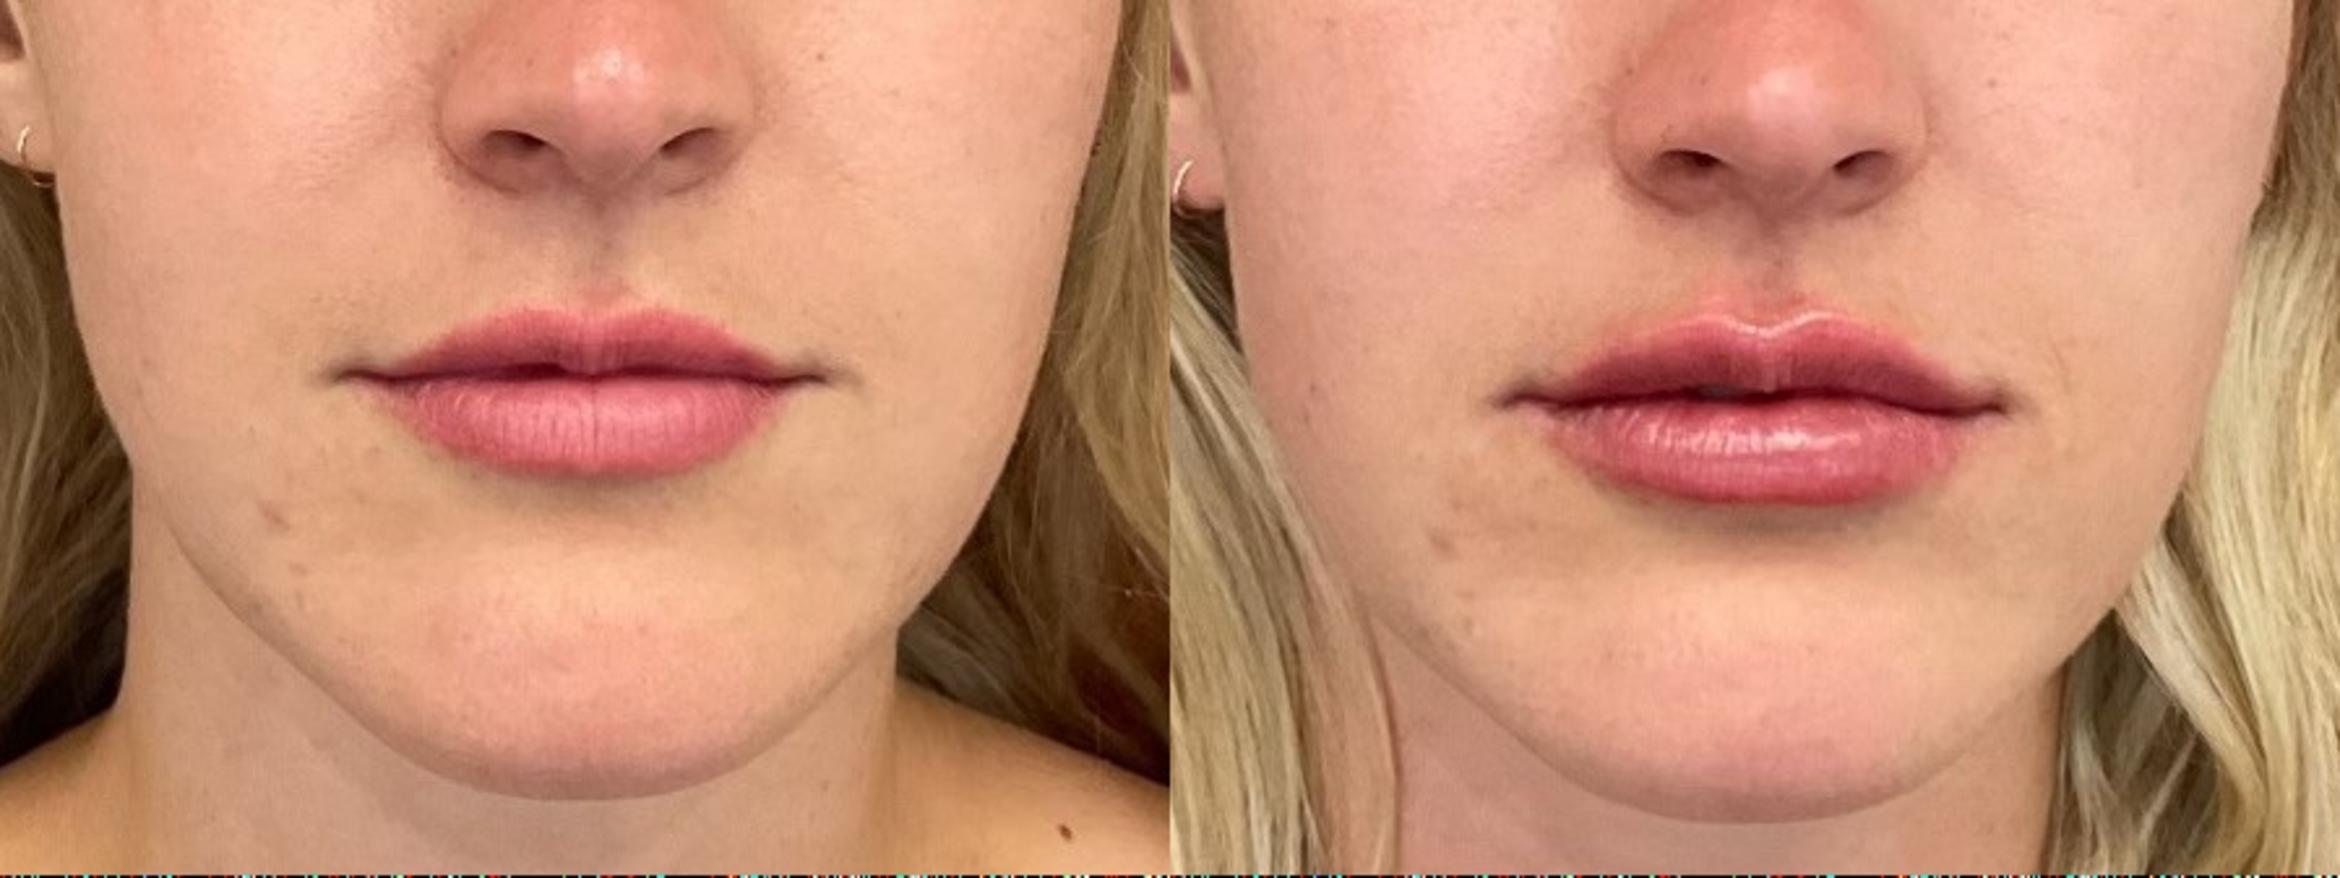 Before & After Lip Filler Case 5 Front View in Eugene, Oregon